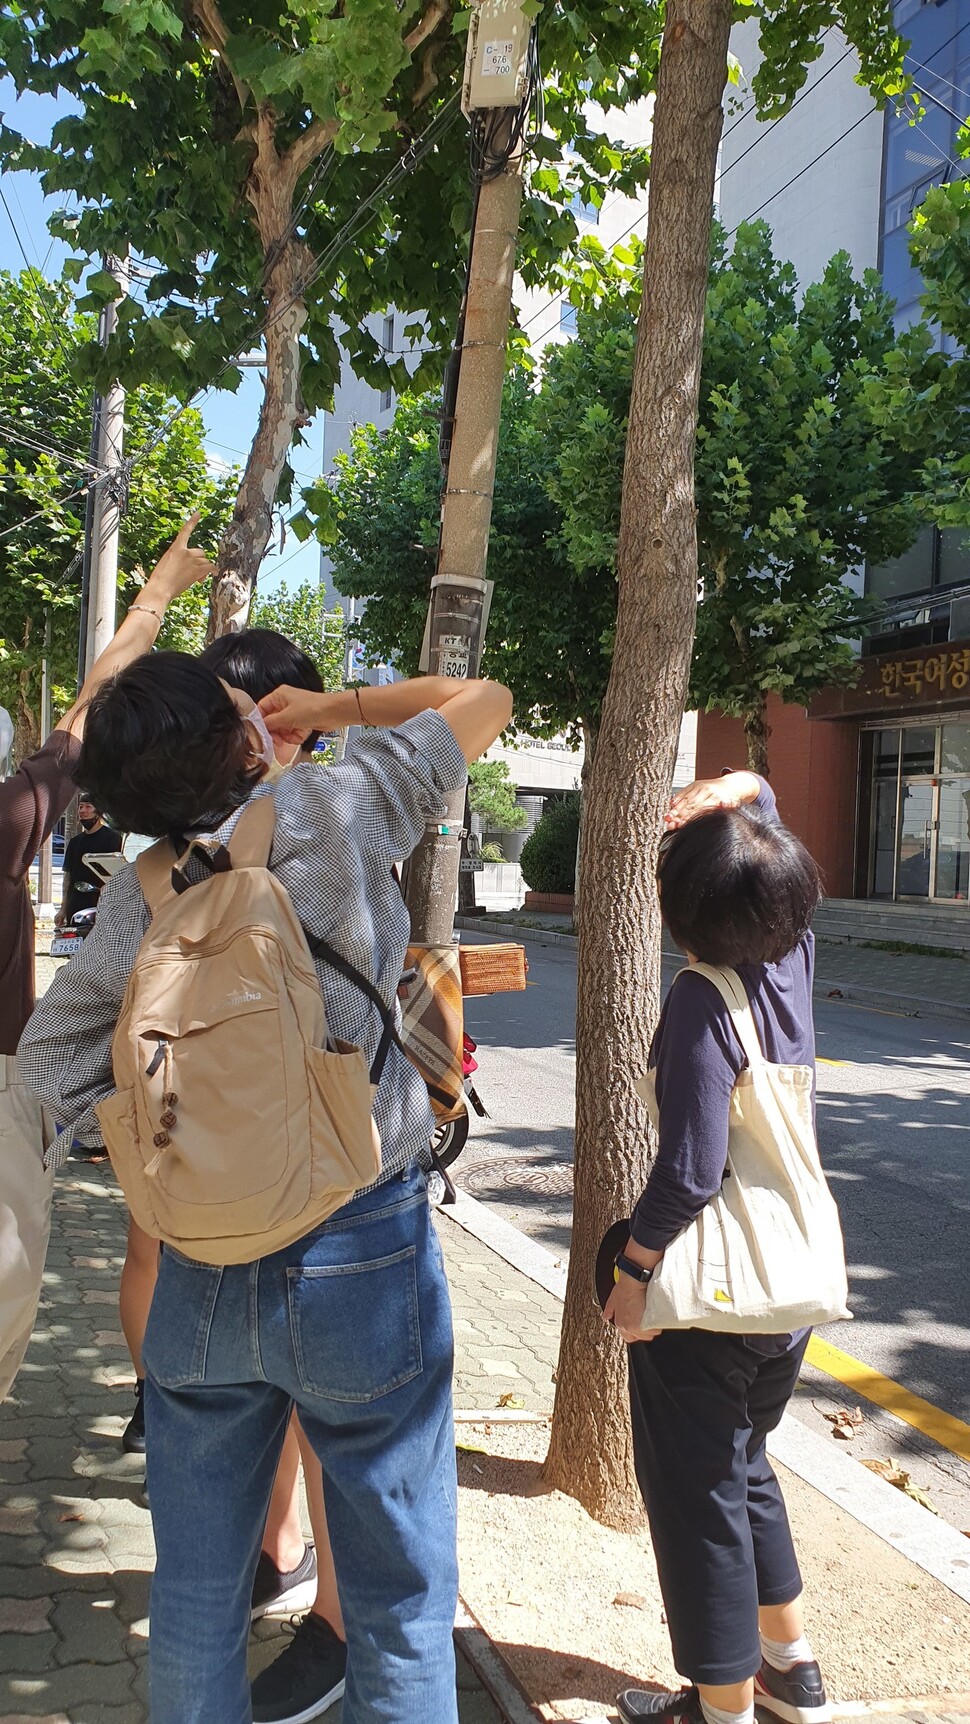 지난 15일 오전 서울 마포구 서교동 한 거리에서 이뤄진 ‘가로수 학교 모니터링단’ 현장수업에서 가로수의 생육상태를 관찰하고 있다.